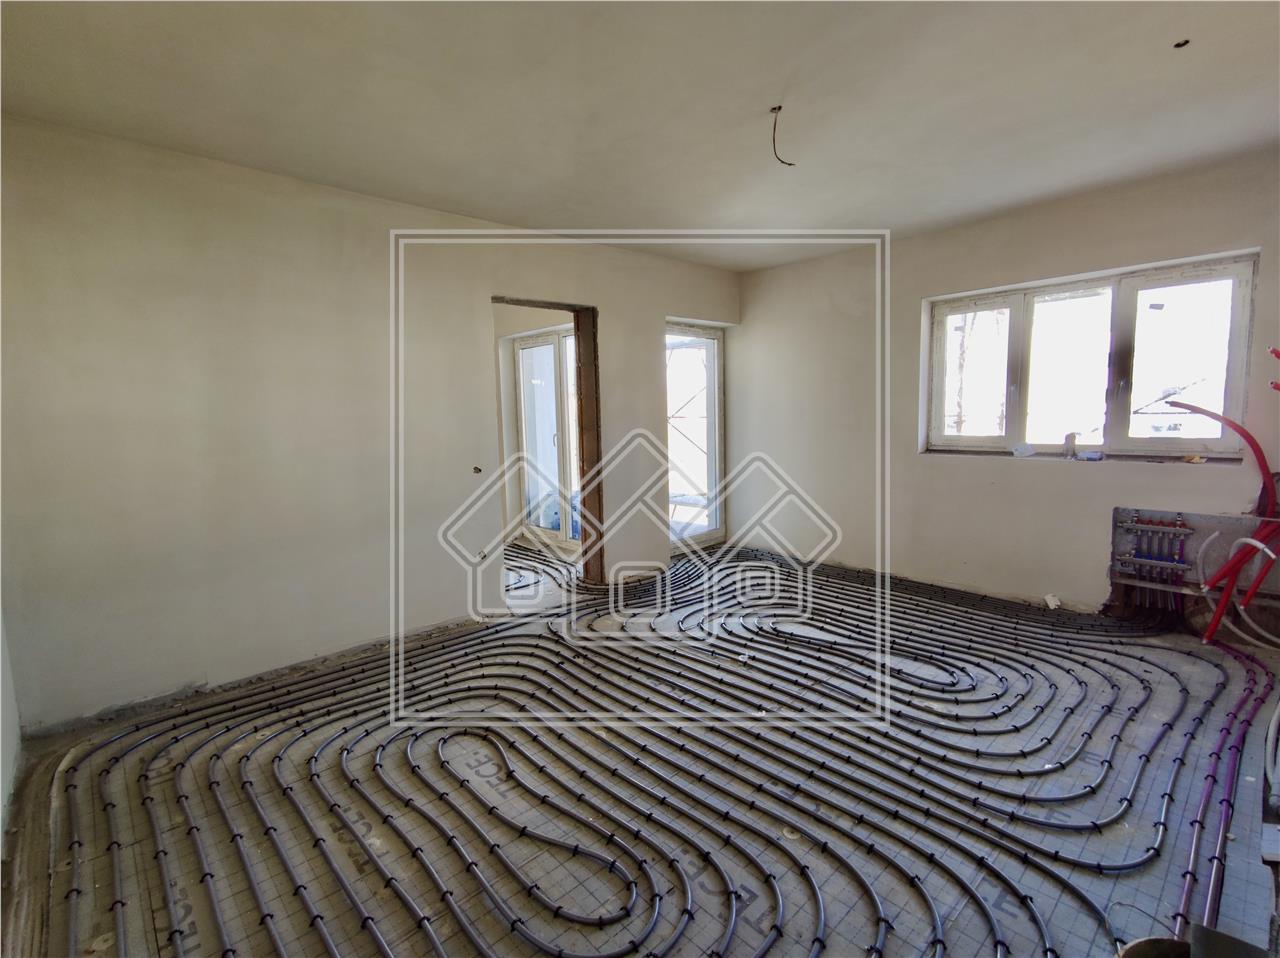 Wohnung zum Verkauf in Sibiu, Selimbar - 2 Zimmer - Etage 1 - Fu?boden